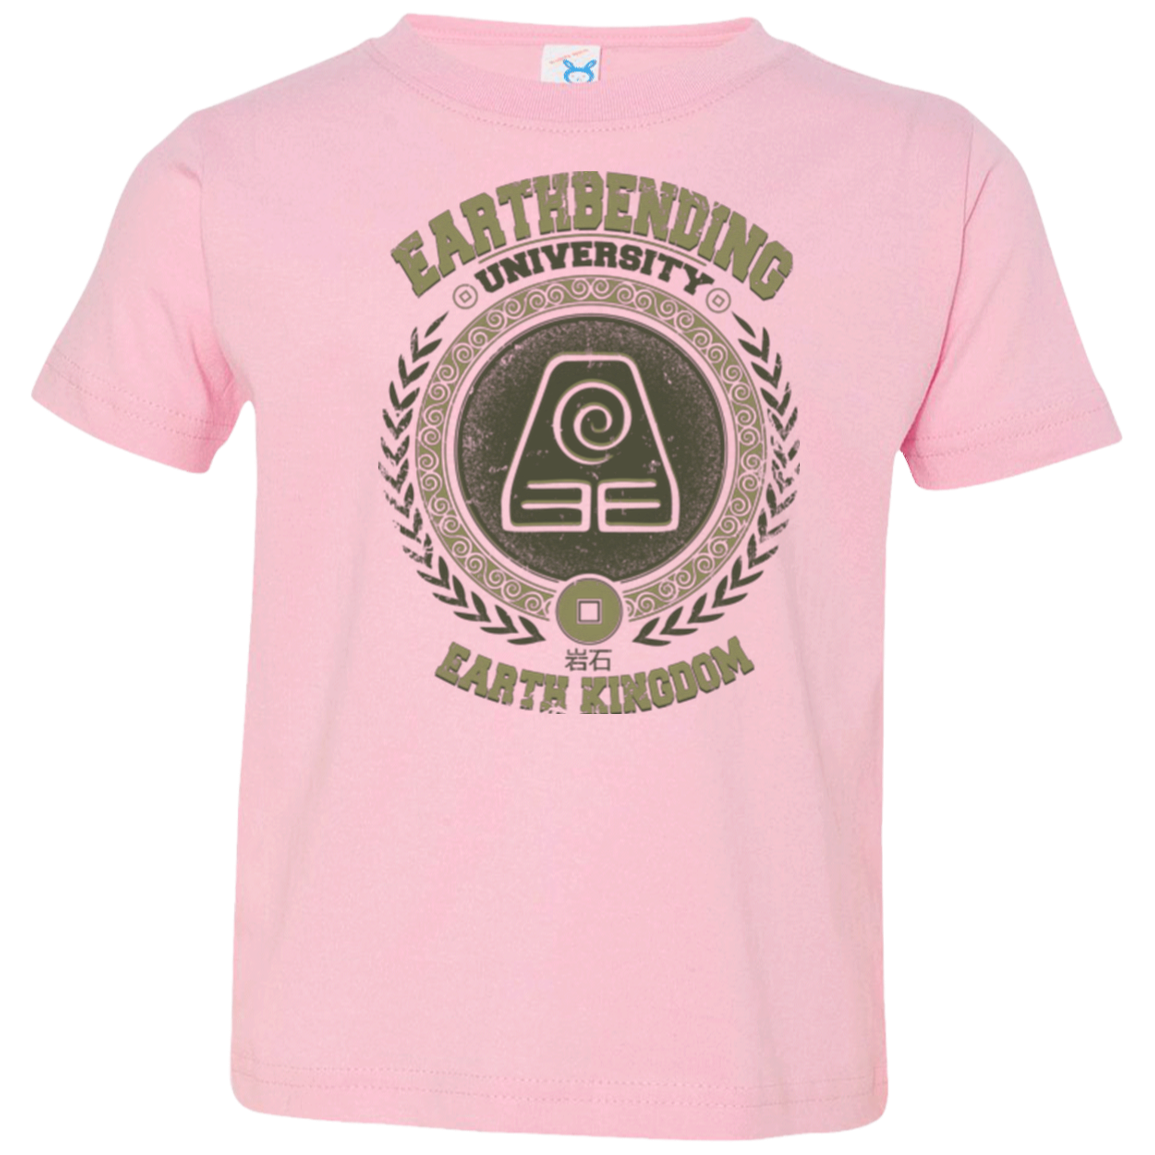 Earthbending university Toddler Premium T-Shirt